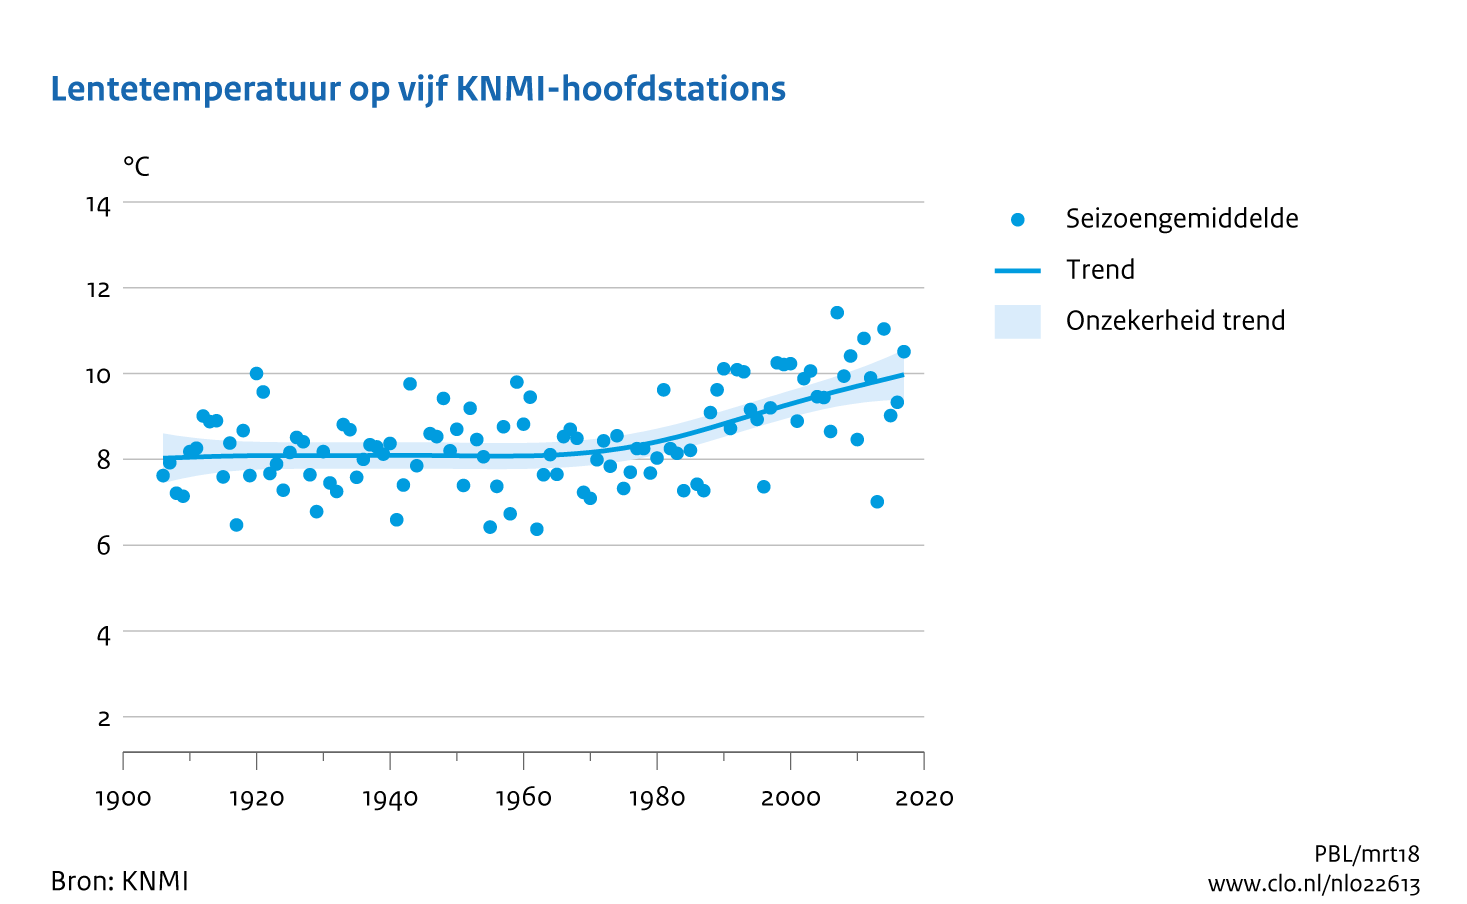 Figuur lentetemperatuur op 5 KNMI -hoofdstations  Nederland. In de rest van de tekst wordt deze figuur uitgebreider uitgelegd.